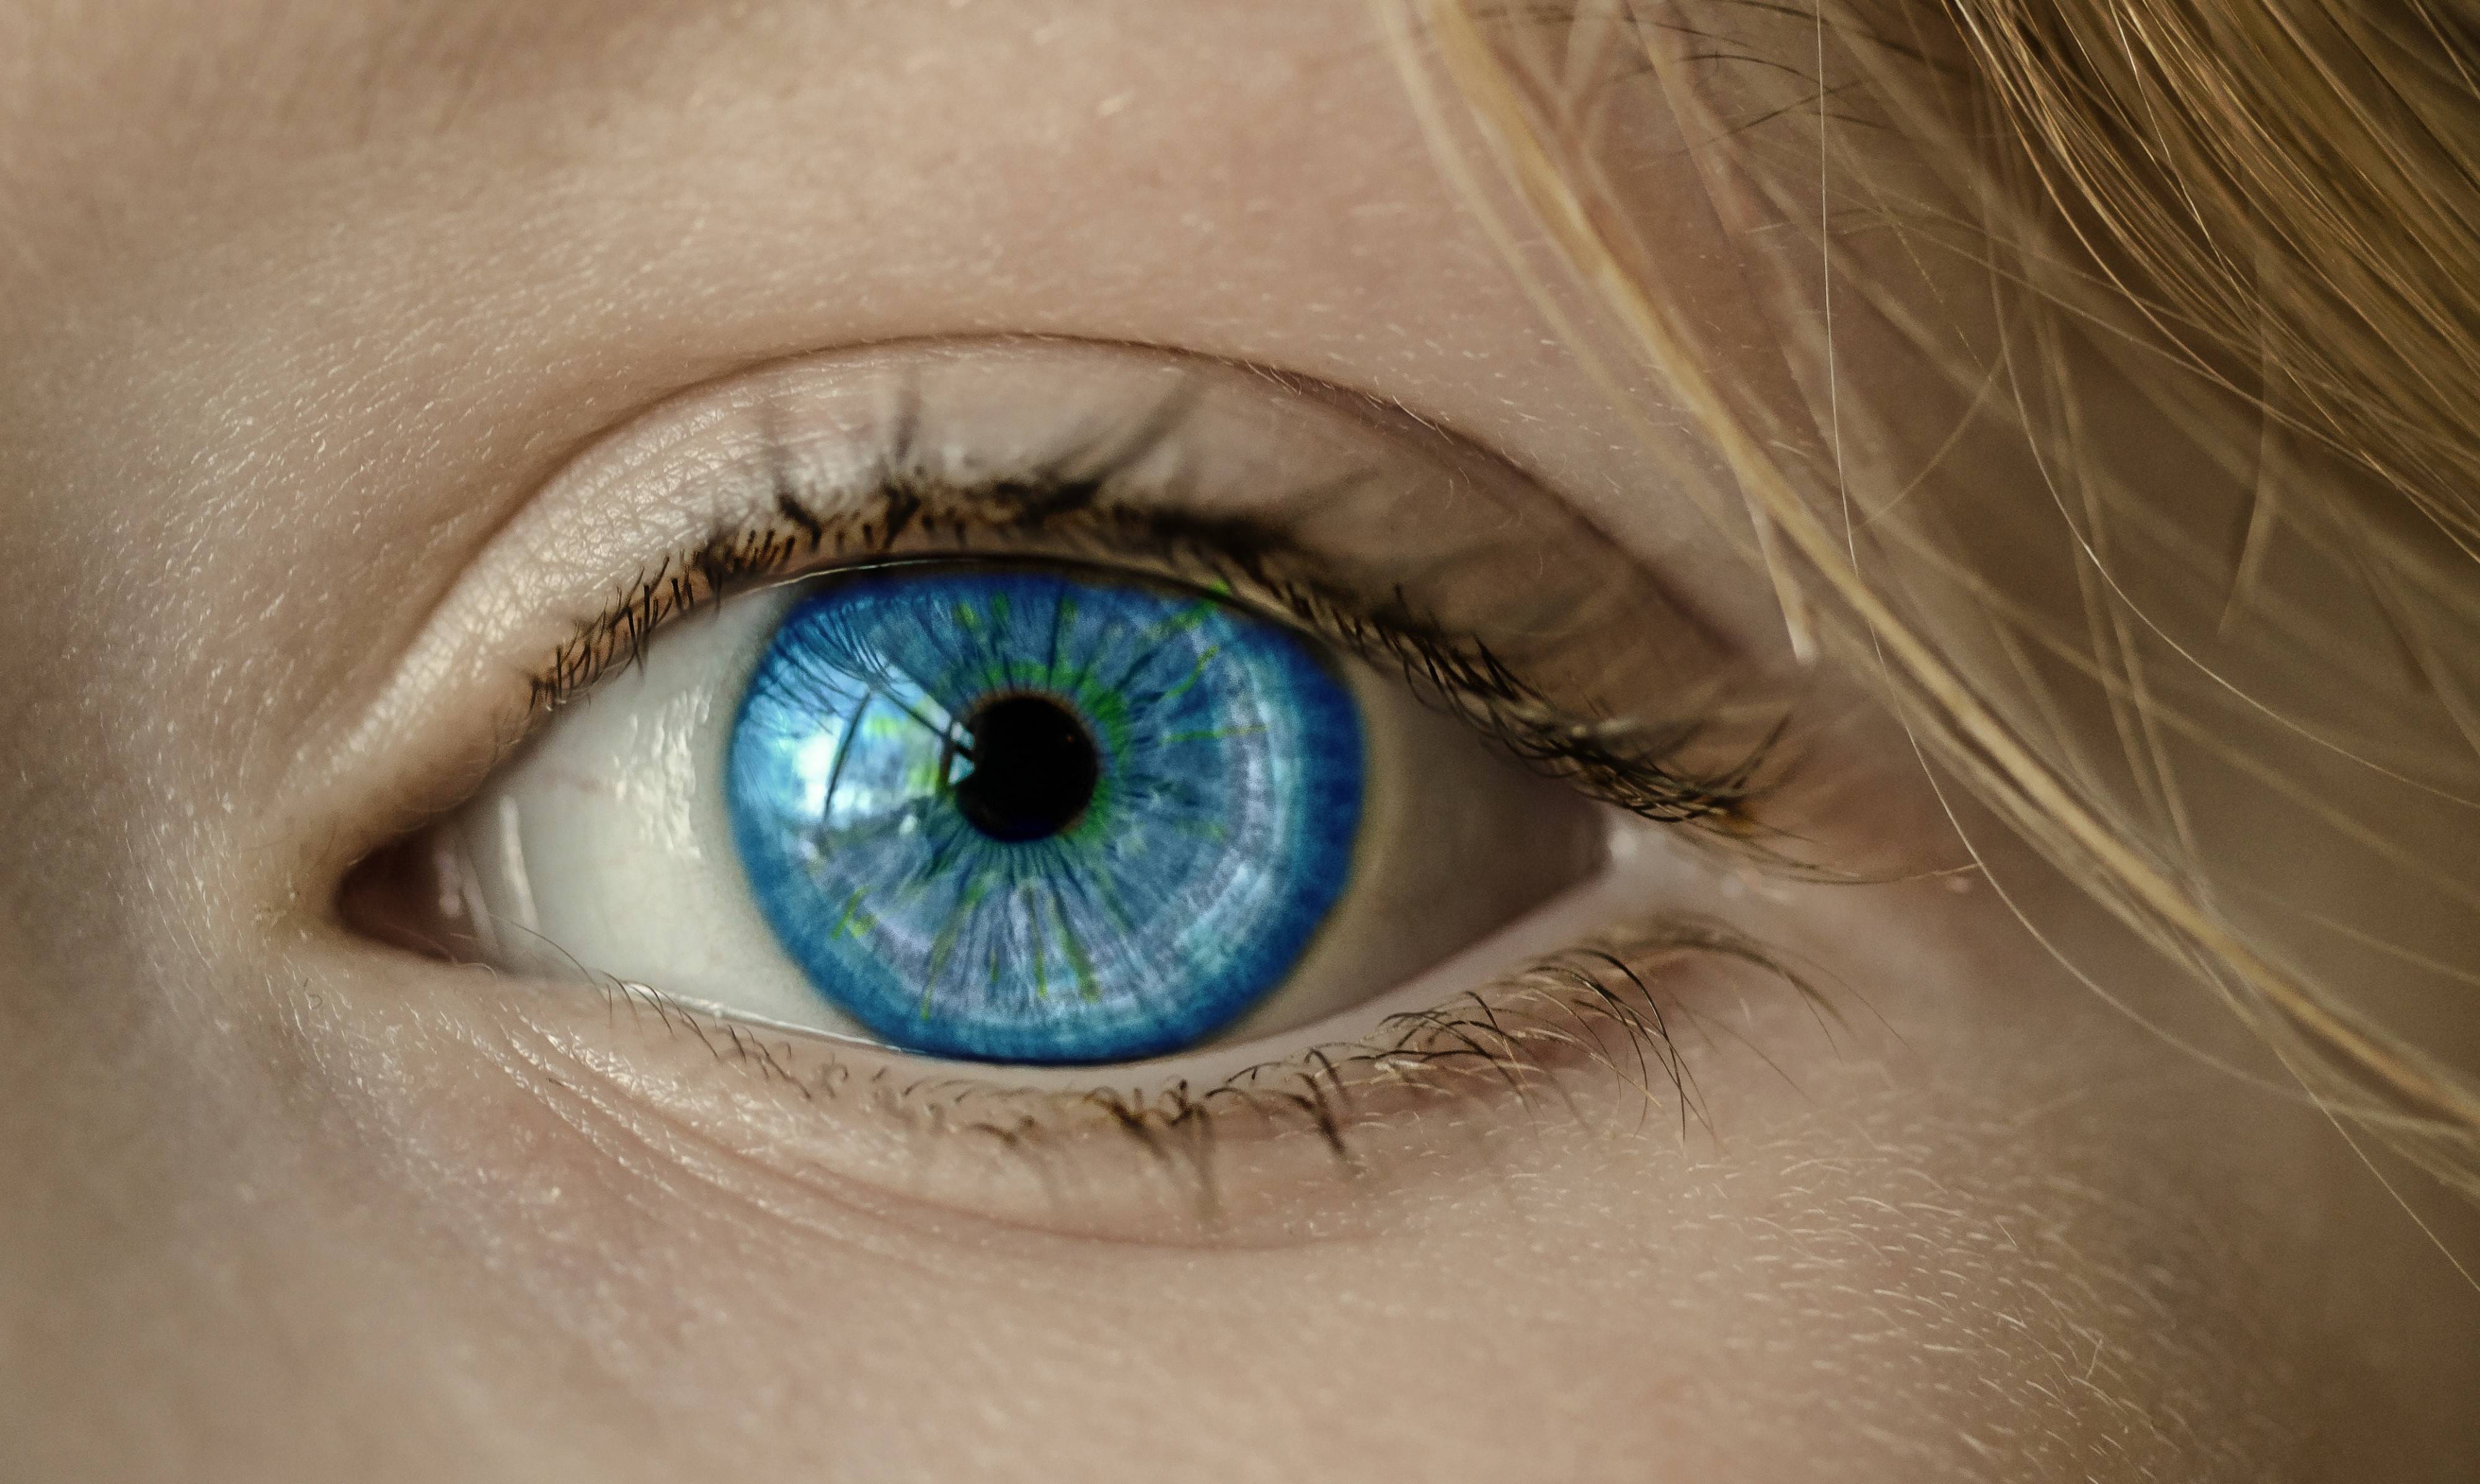 Зелено-карие глаза: значение, секреты макияжа - "здоровое око"